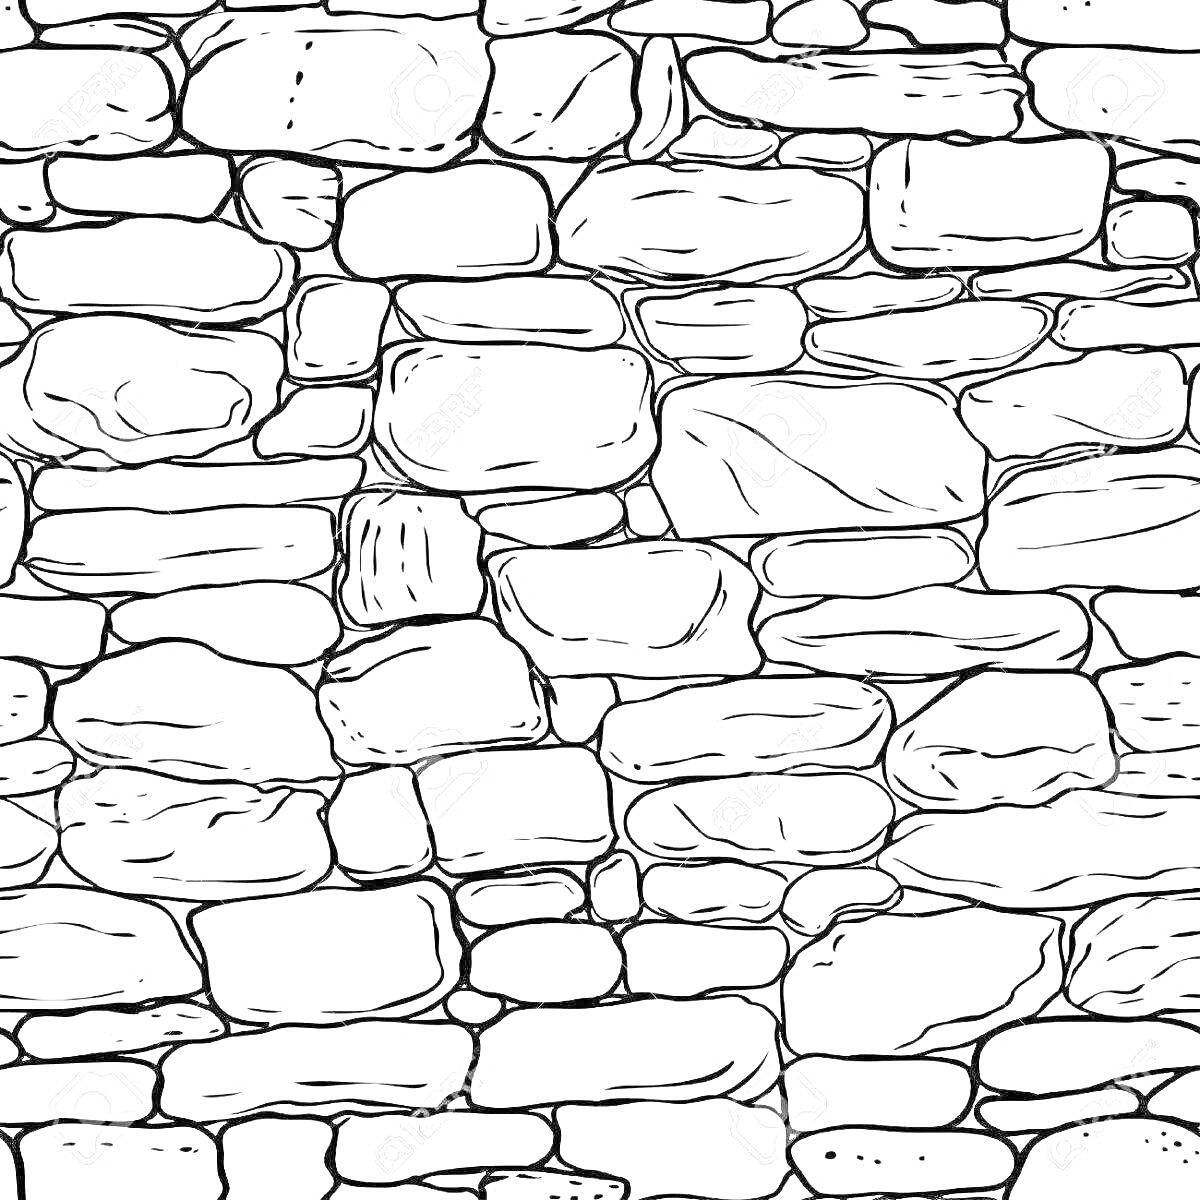 Раскраска Каменная стена с неровными камнями различных размеров и форм